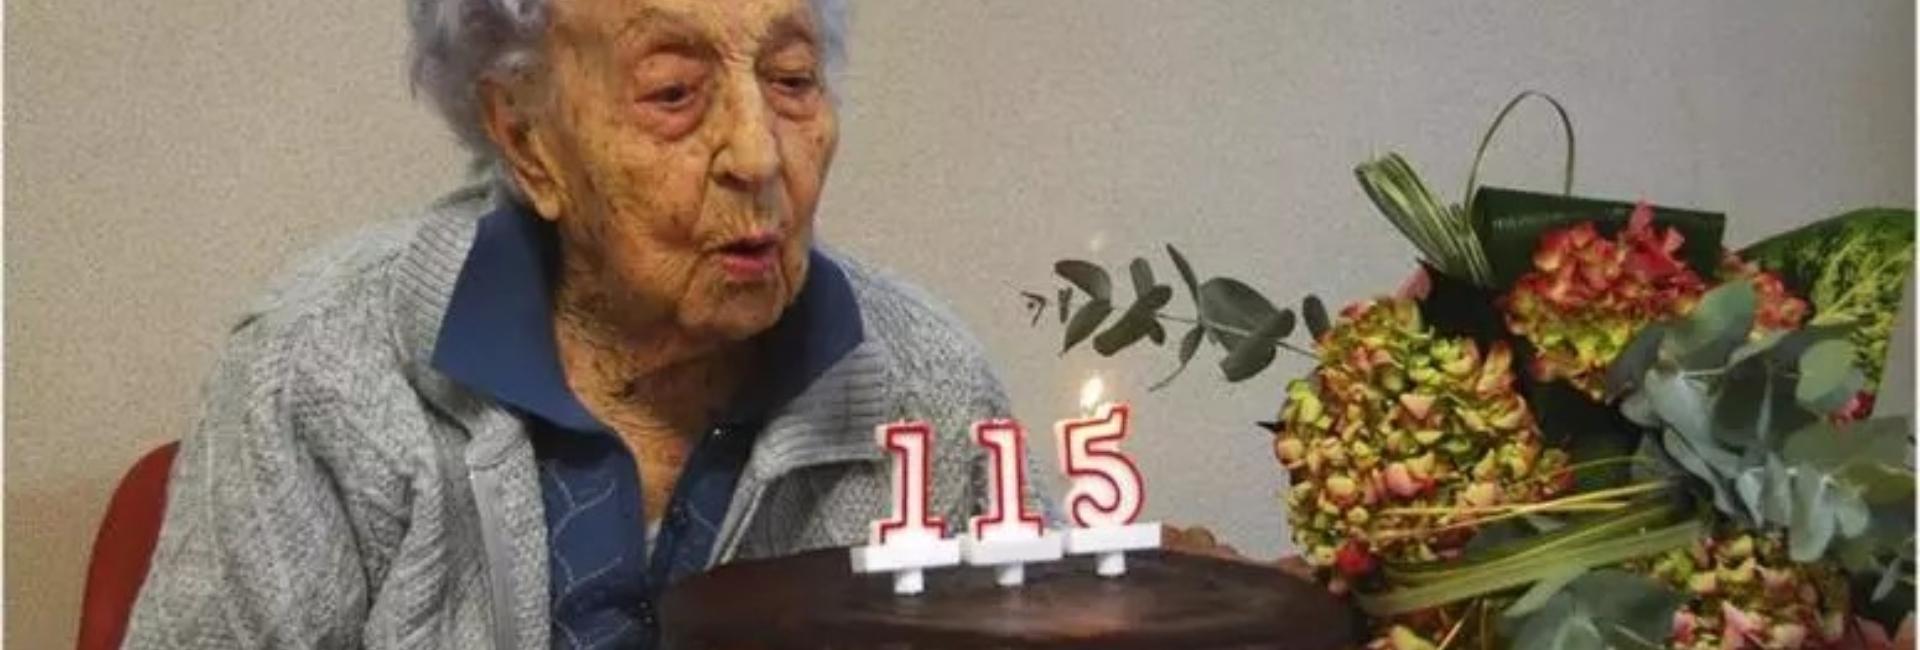 Espanhola de 115 anos entra no Guinness como a mulher mais velha do mundo